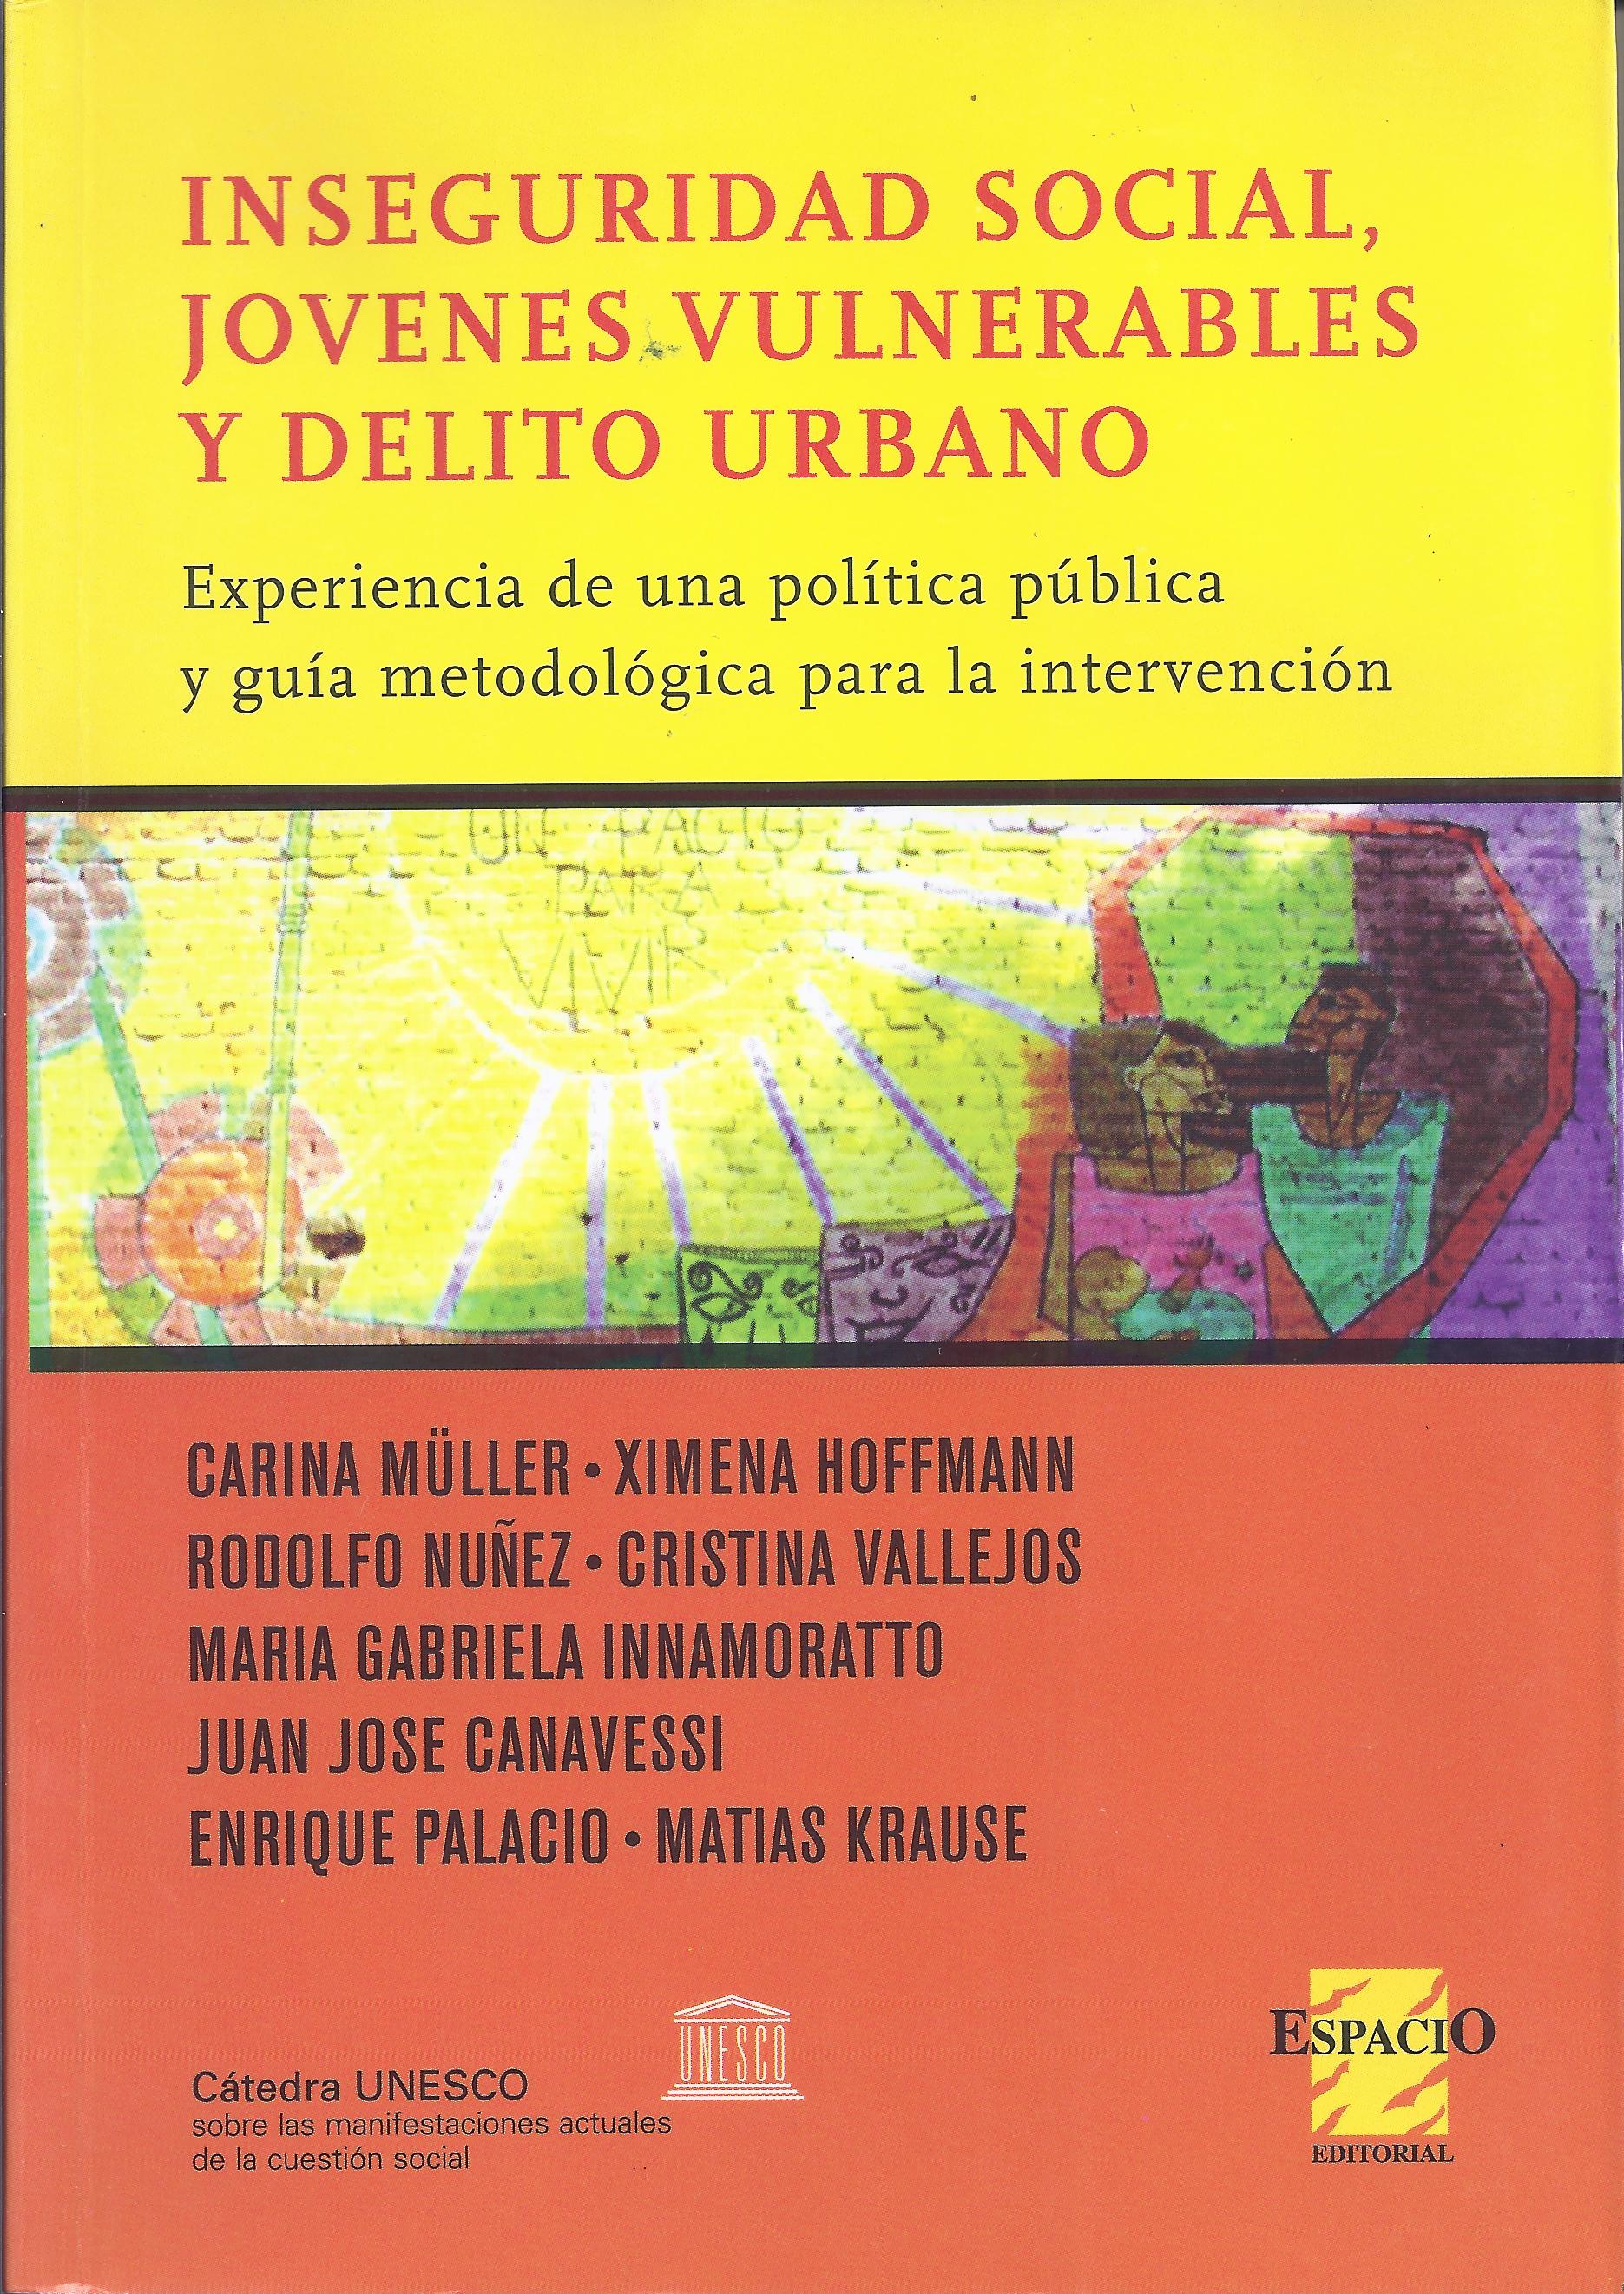 Inseguridad social, jóvenes vulnerables y delito urbano. Experiencia de una política pública y guía metodológica para la intervención.